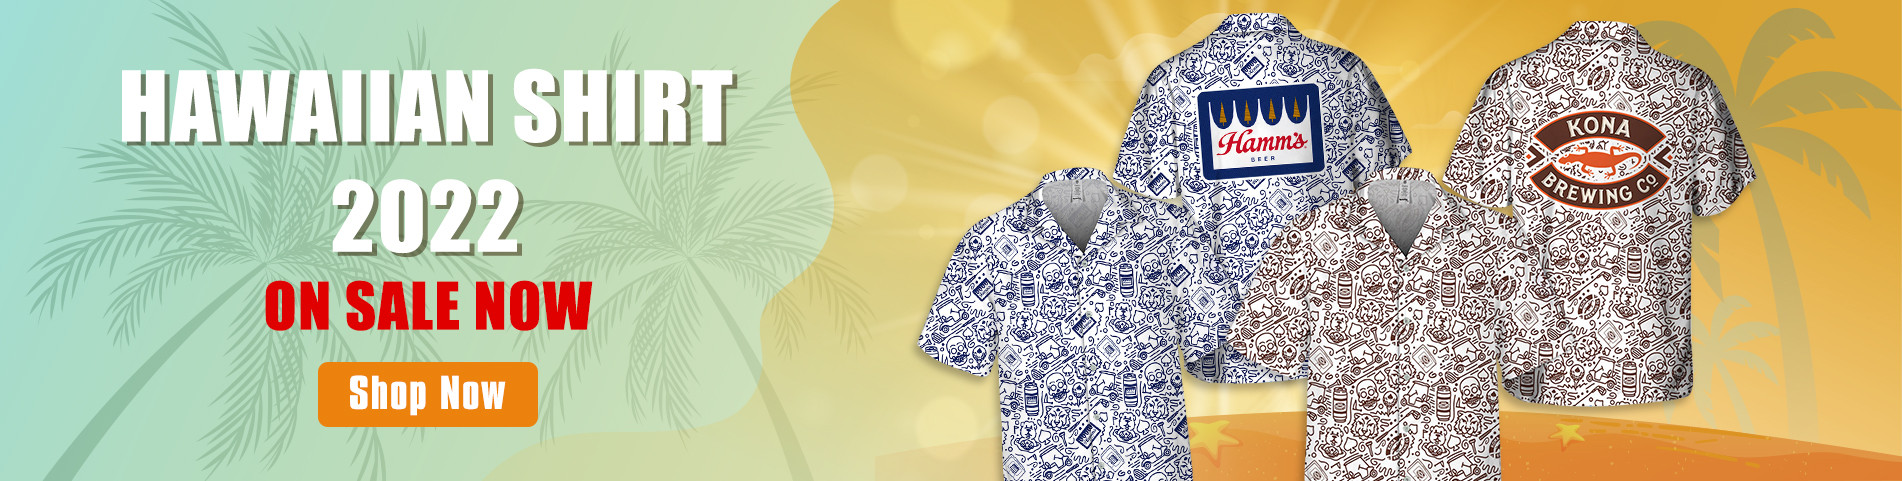 Hawaiian Shirt 2022